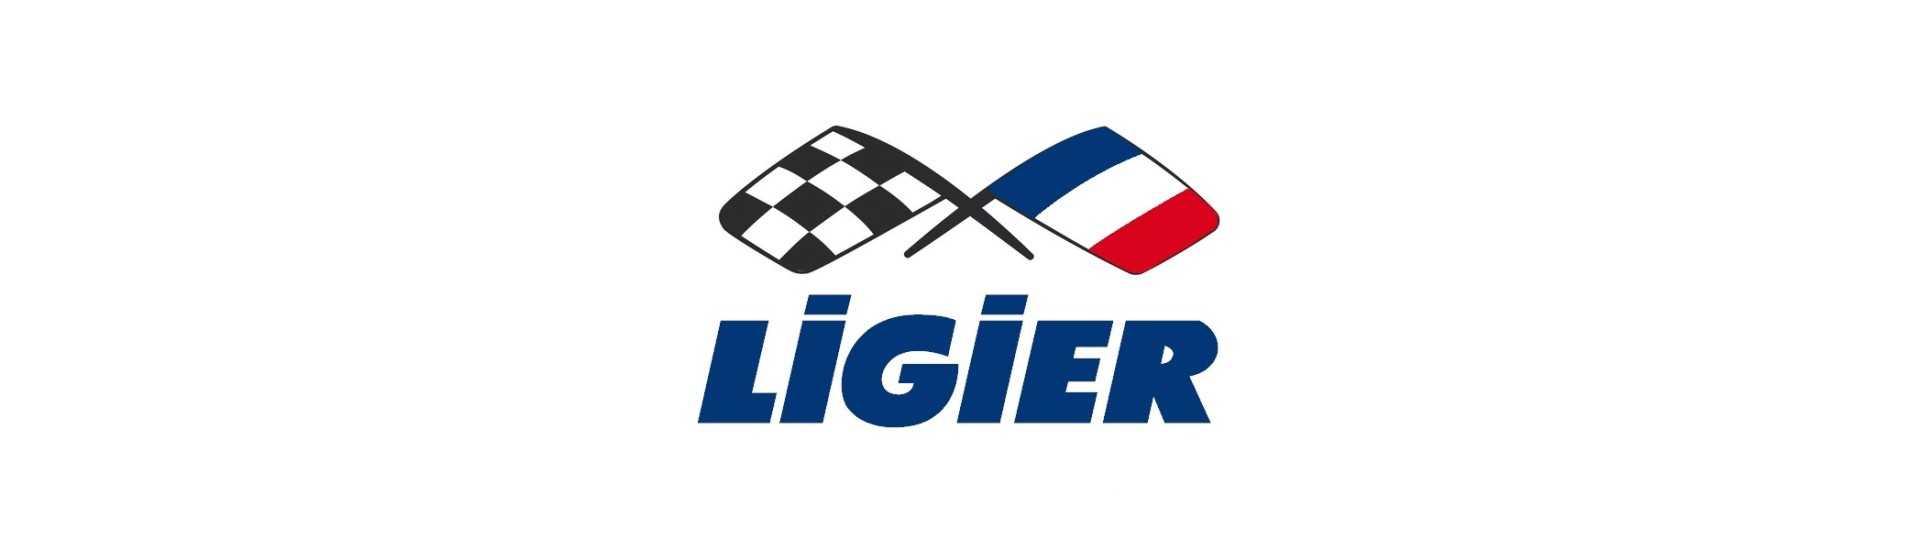 Kroppsarbete till bästa pris för bil utan tillstånd Ligier